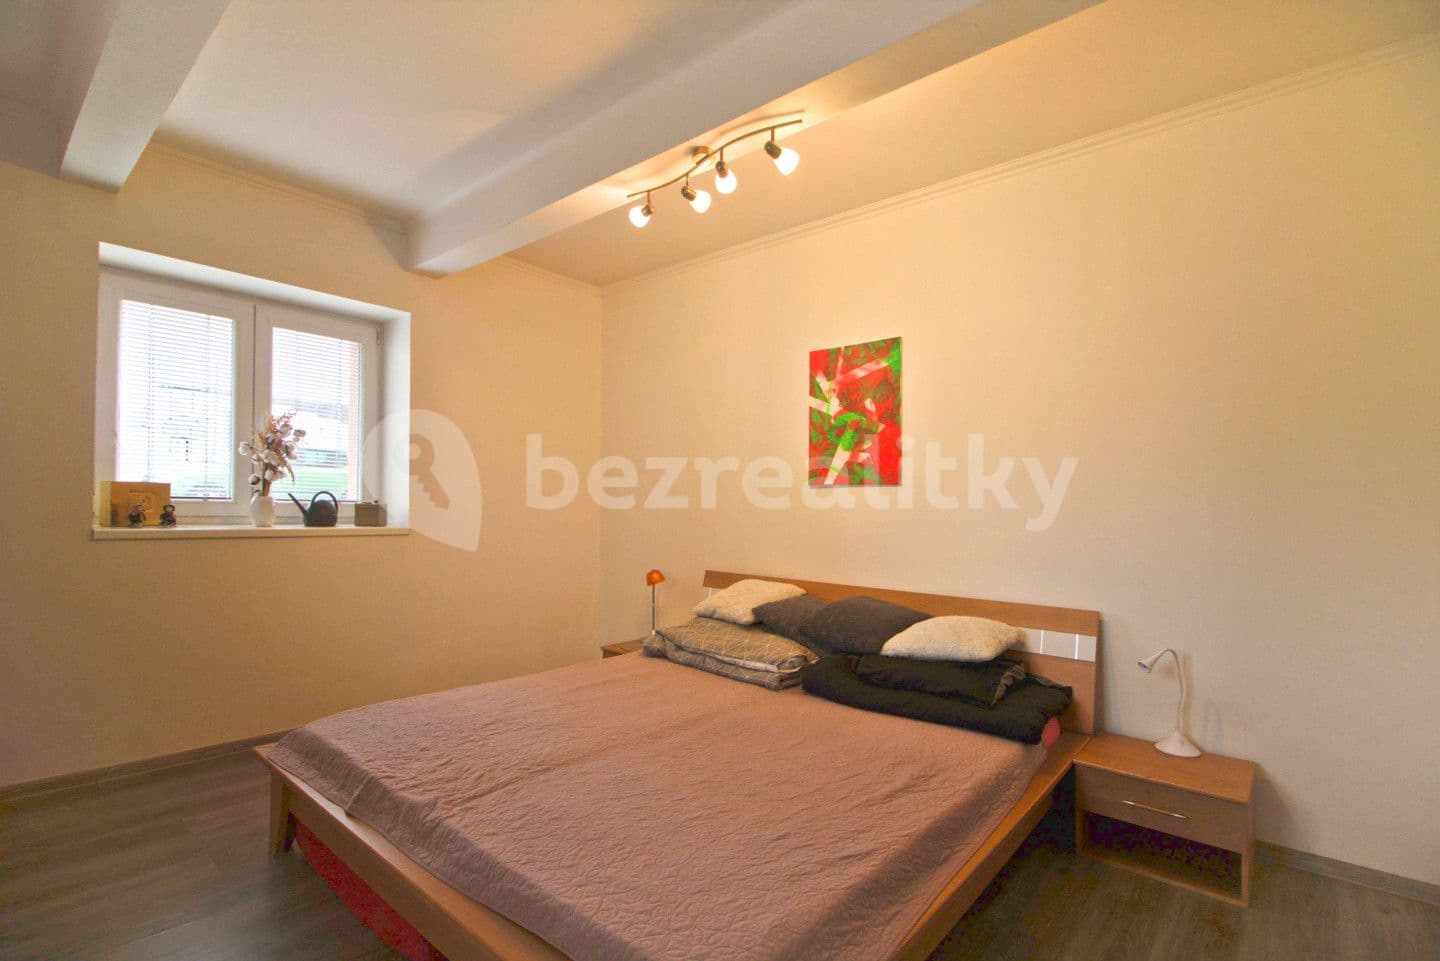 2 bedroom with open-plan kitchen flat for sale, 63 m², Julia Fučíka, Nový Bydžov, Královéhradecký Region